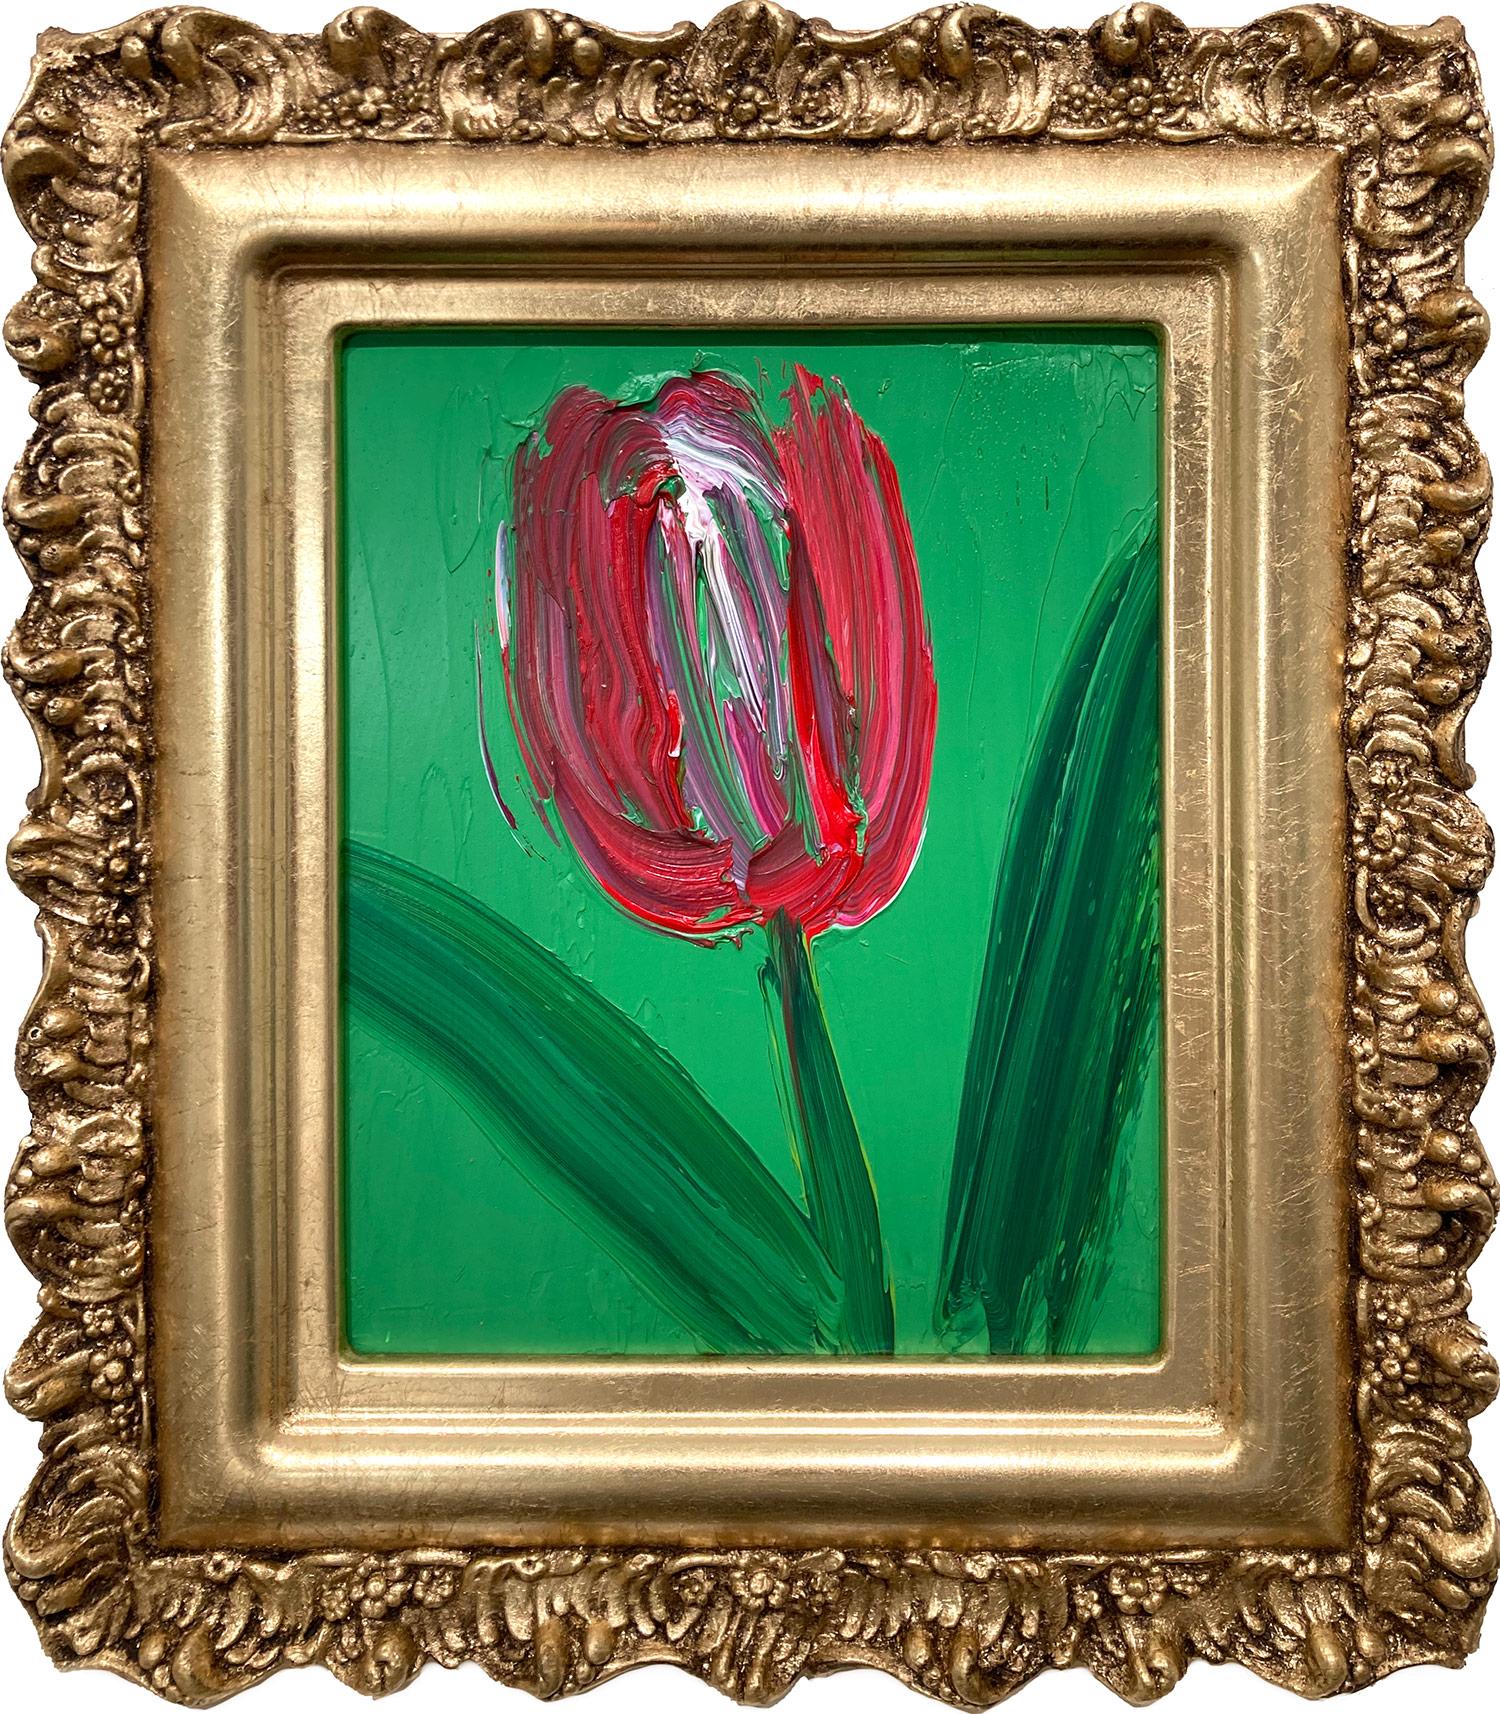 Abstract Painting Hunt Slonem - "Untitled" Tulipe rouge et blanche sur fond vert forêt, peinture à l'huile encadrée